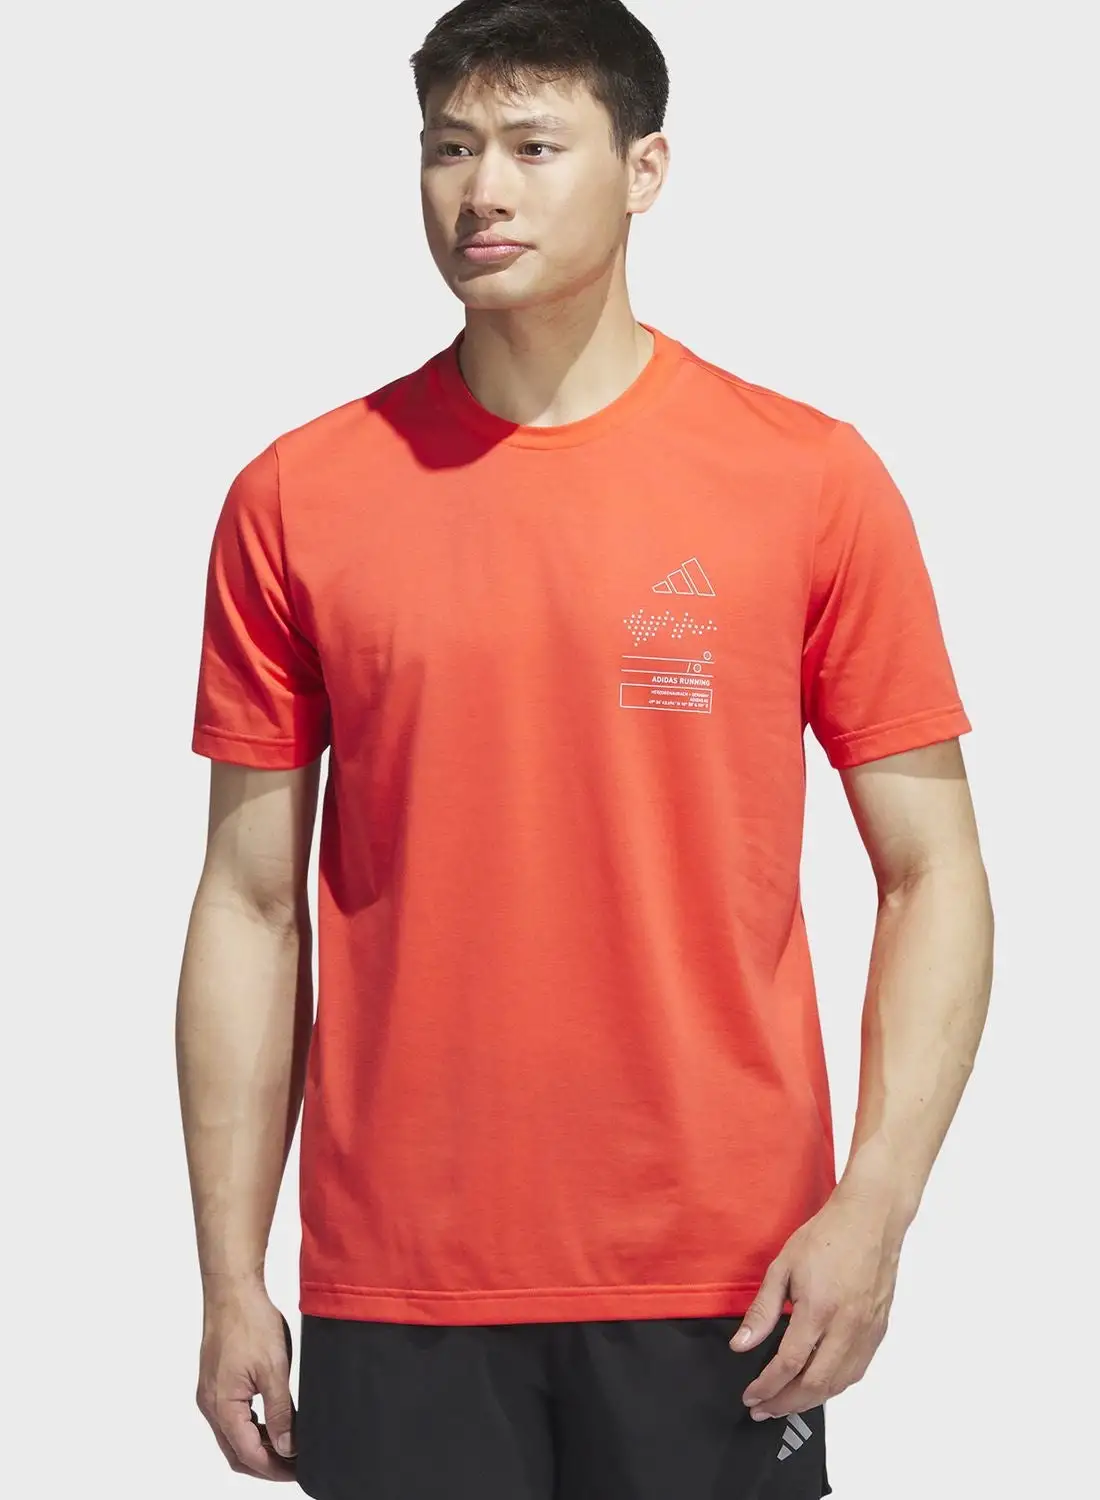 Adidas Adizero T-Shirt